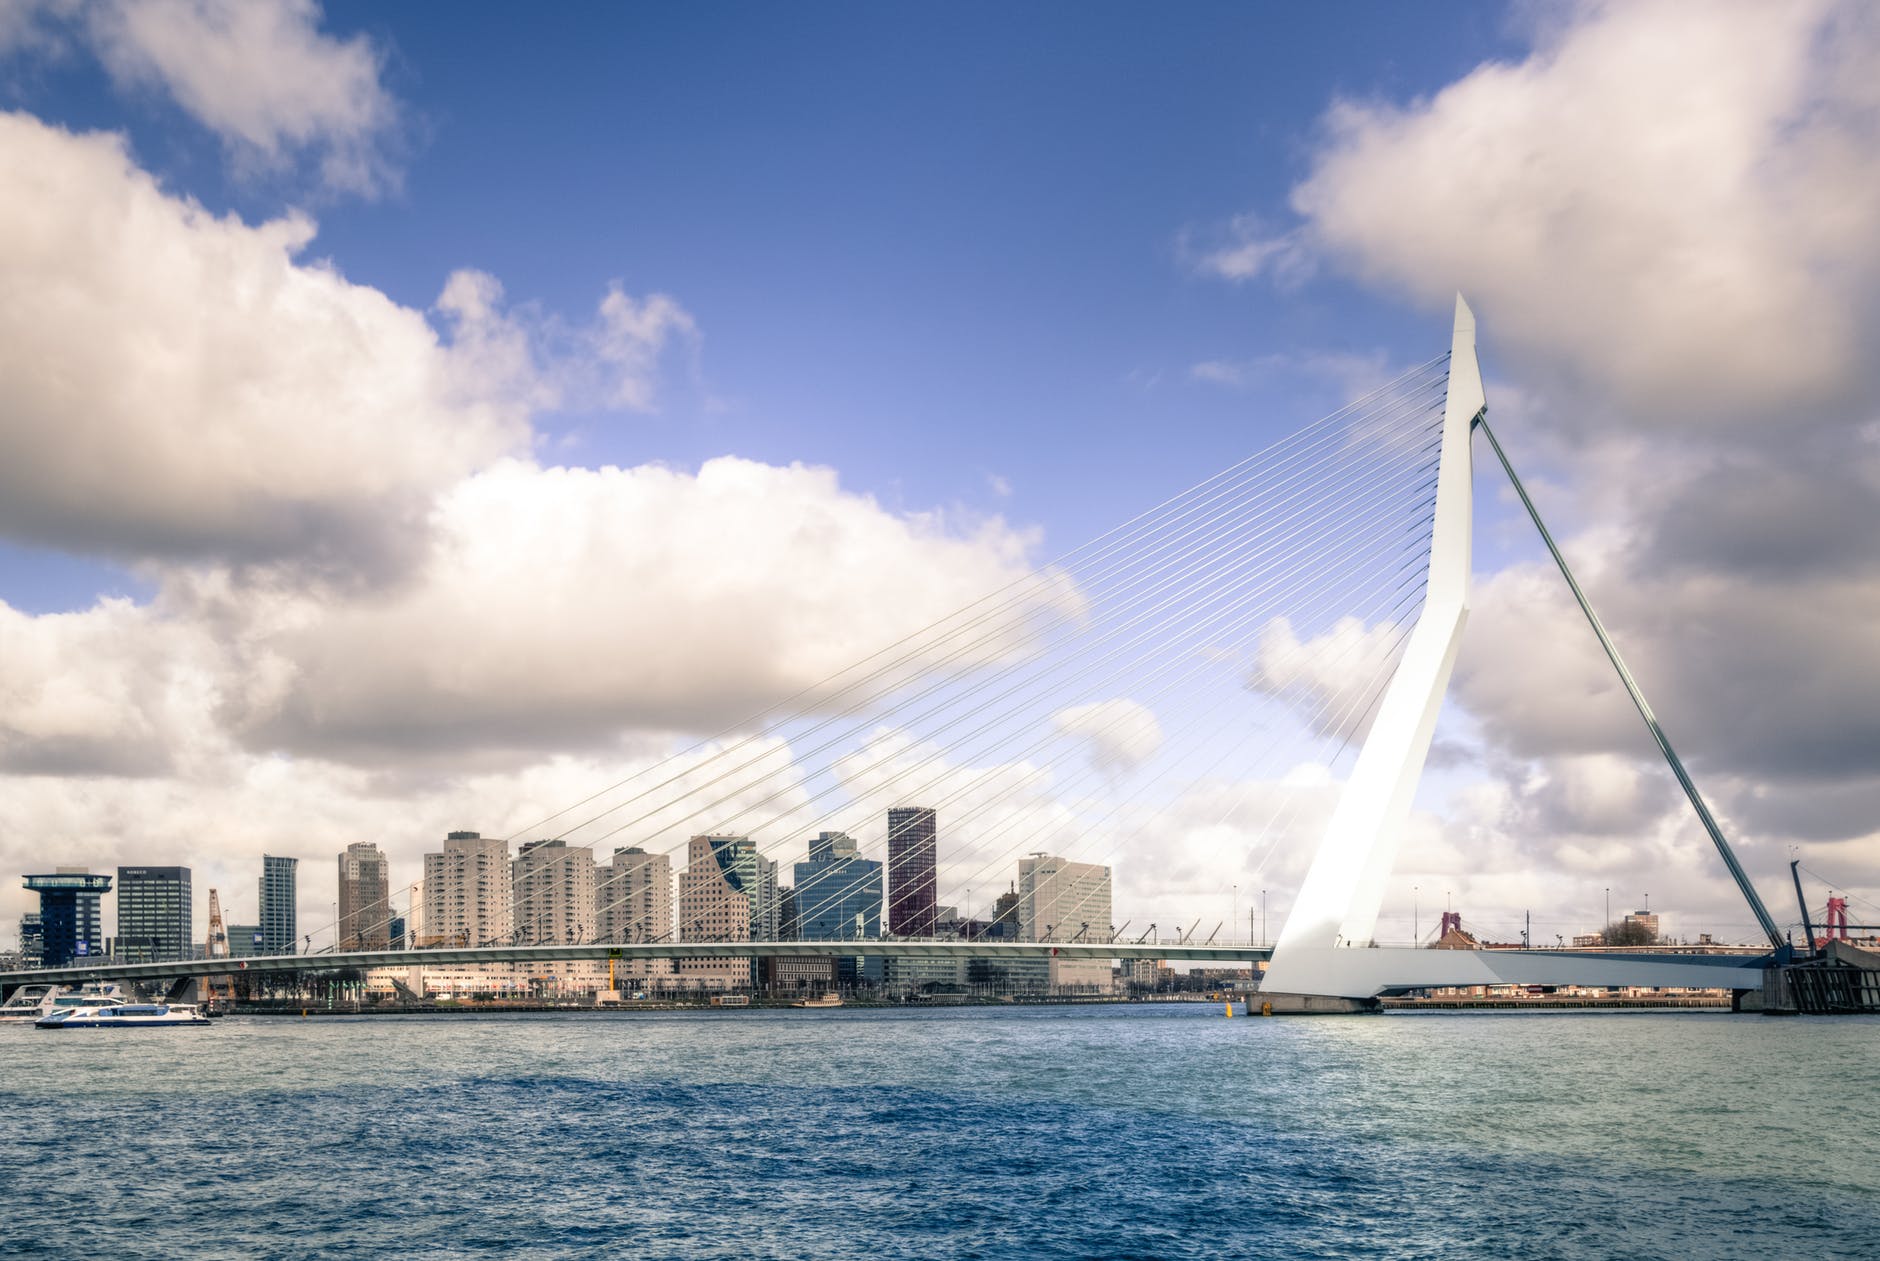 Voorstellen Voetganger Belachelijk Gratis Energievoucher van gemeente Rotterdam - Energienieuws